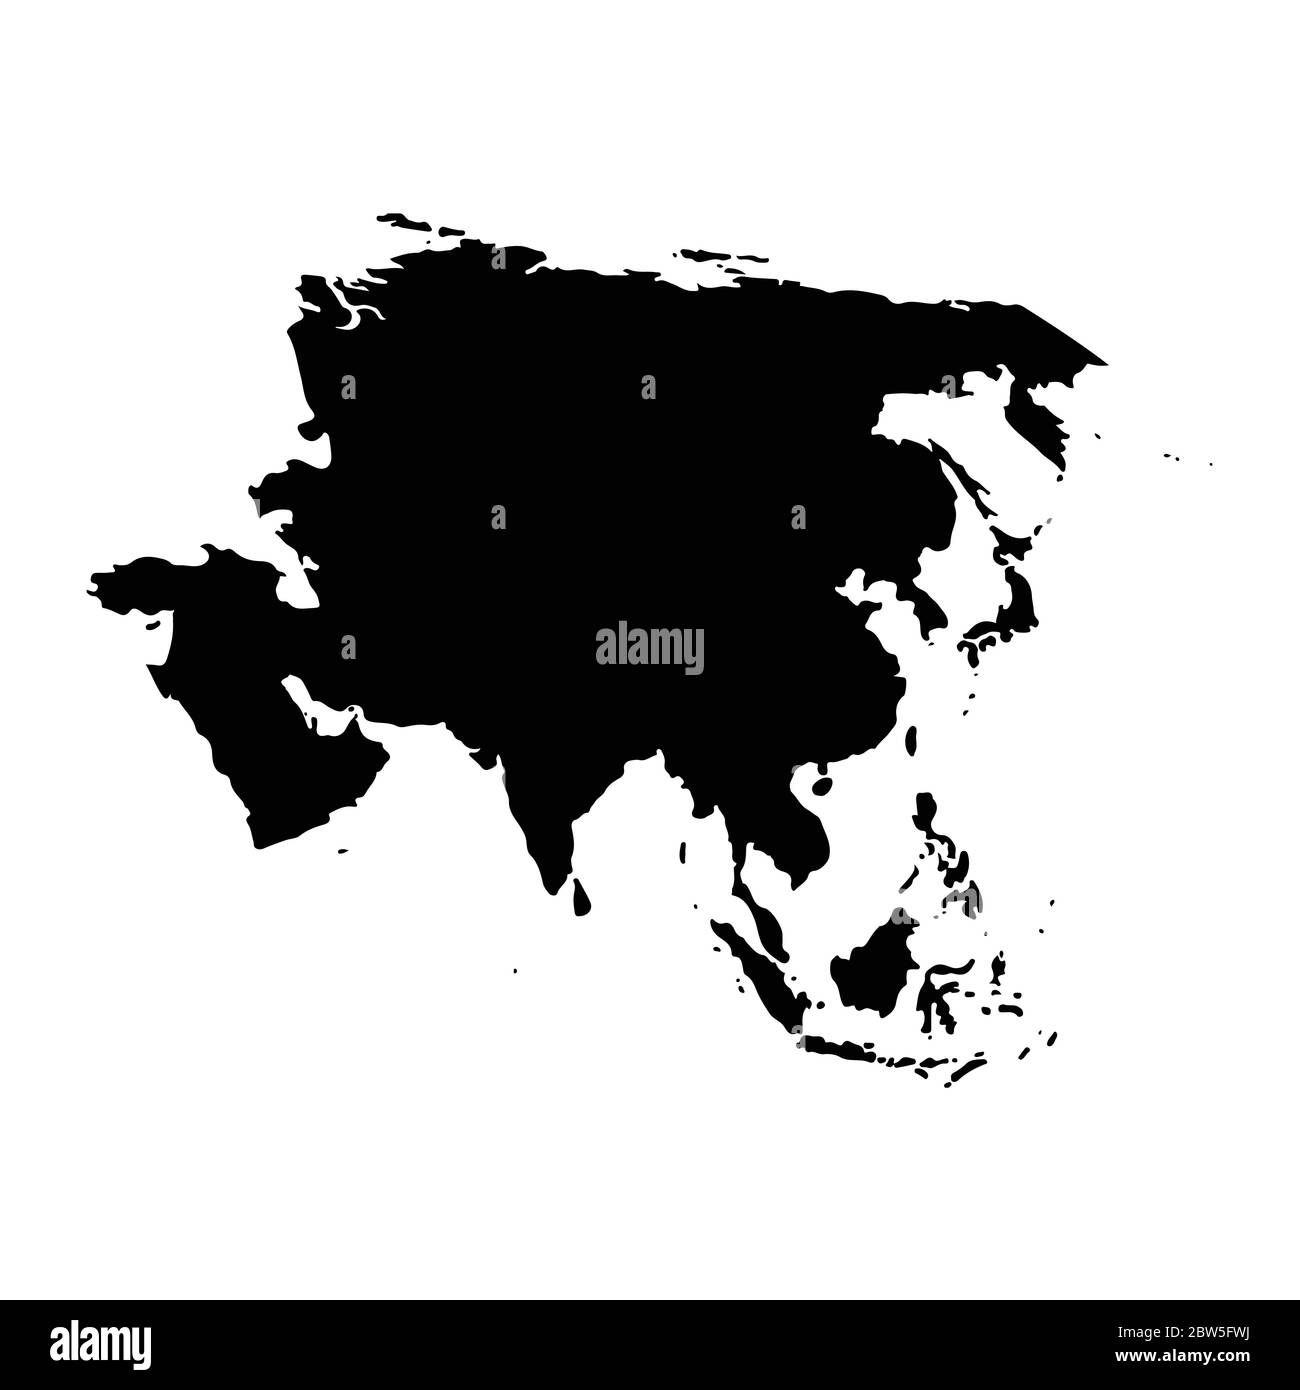 Mappa vettoriale Asia. Illustrazione vettoriale isolata. Nero su sfondo bianco. Illustrazione EPS 10. Illustrazione Vettoriale